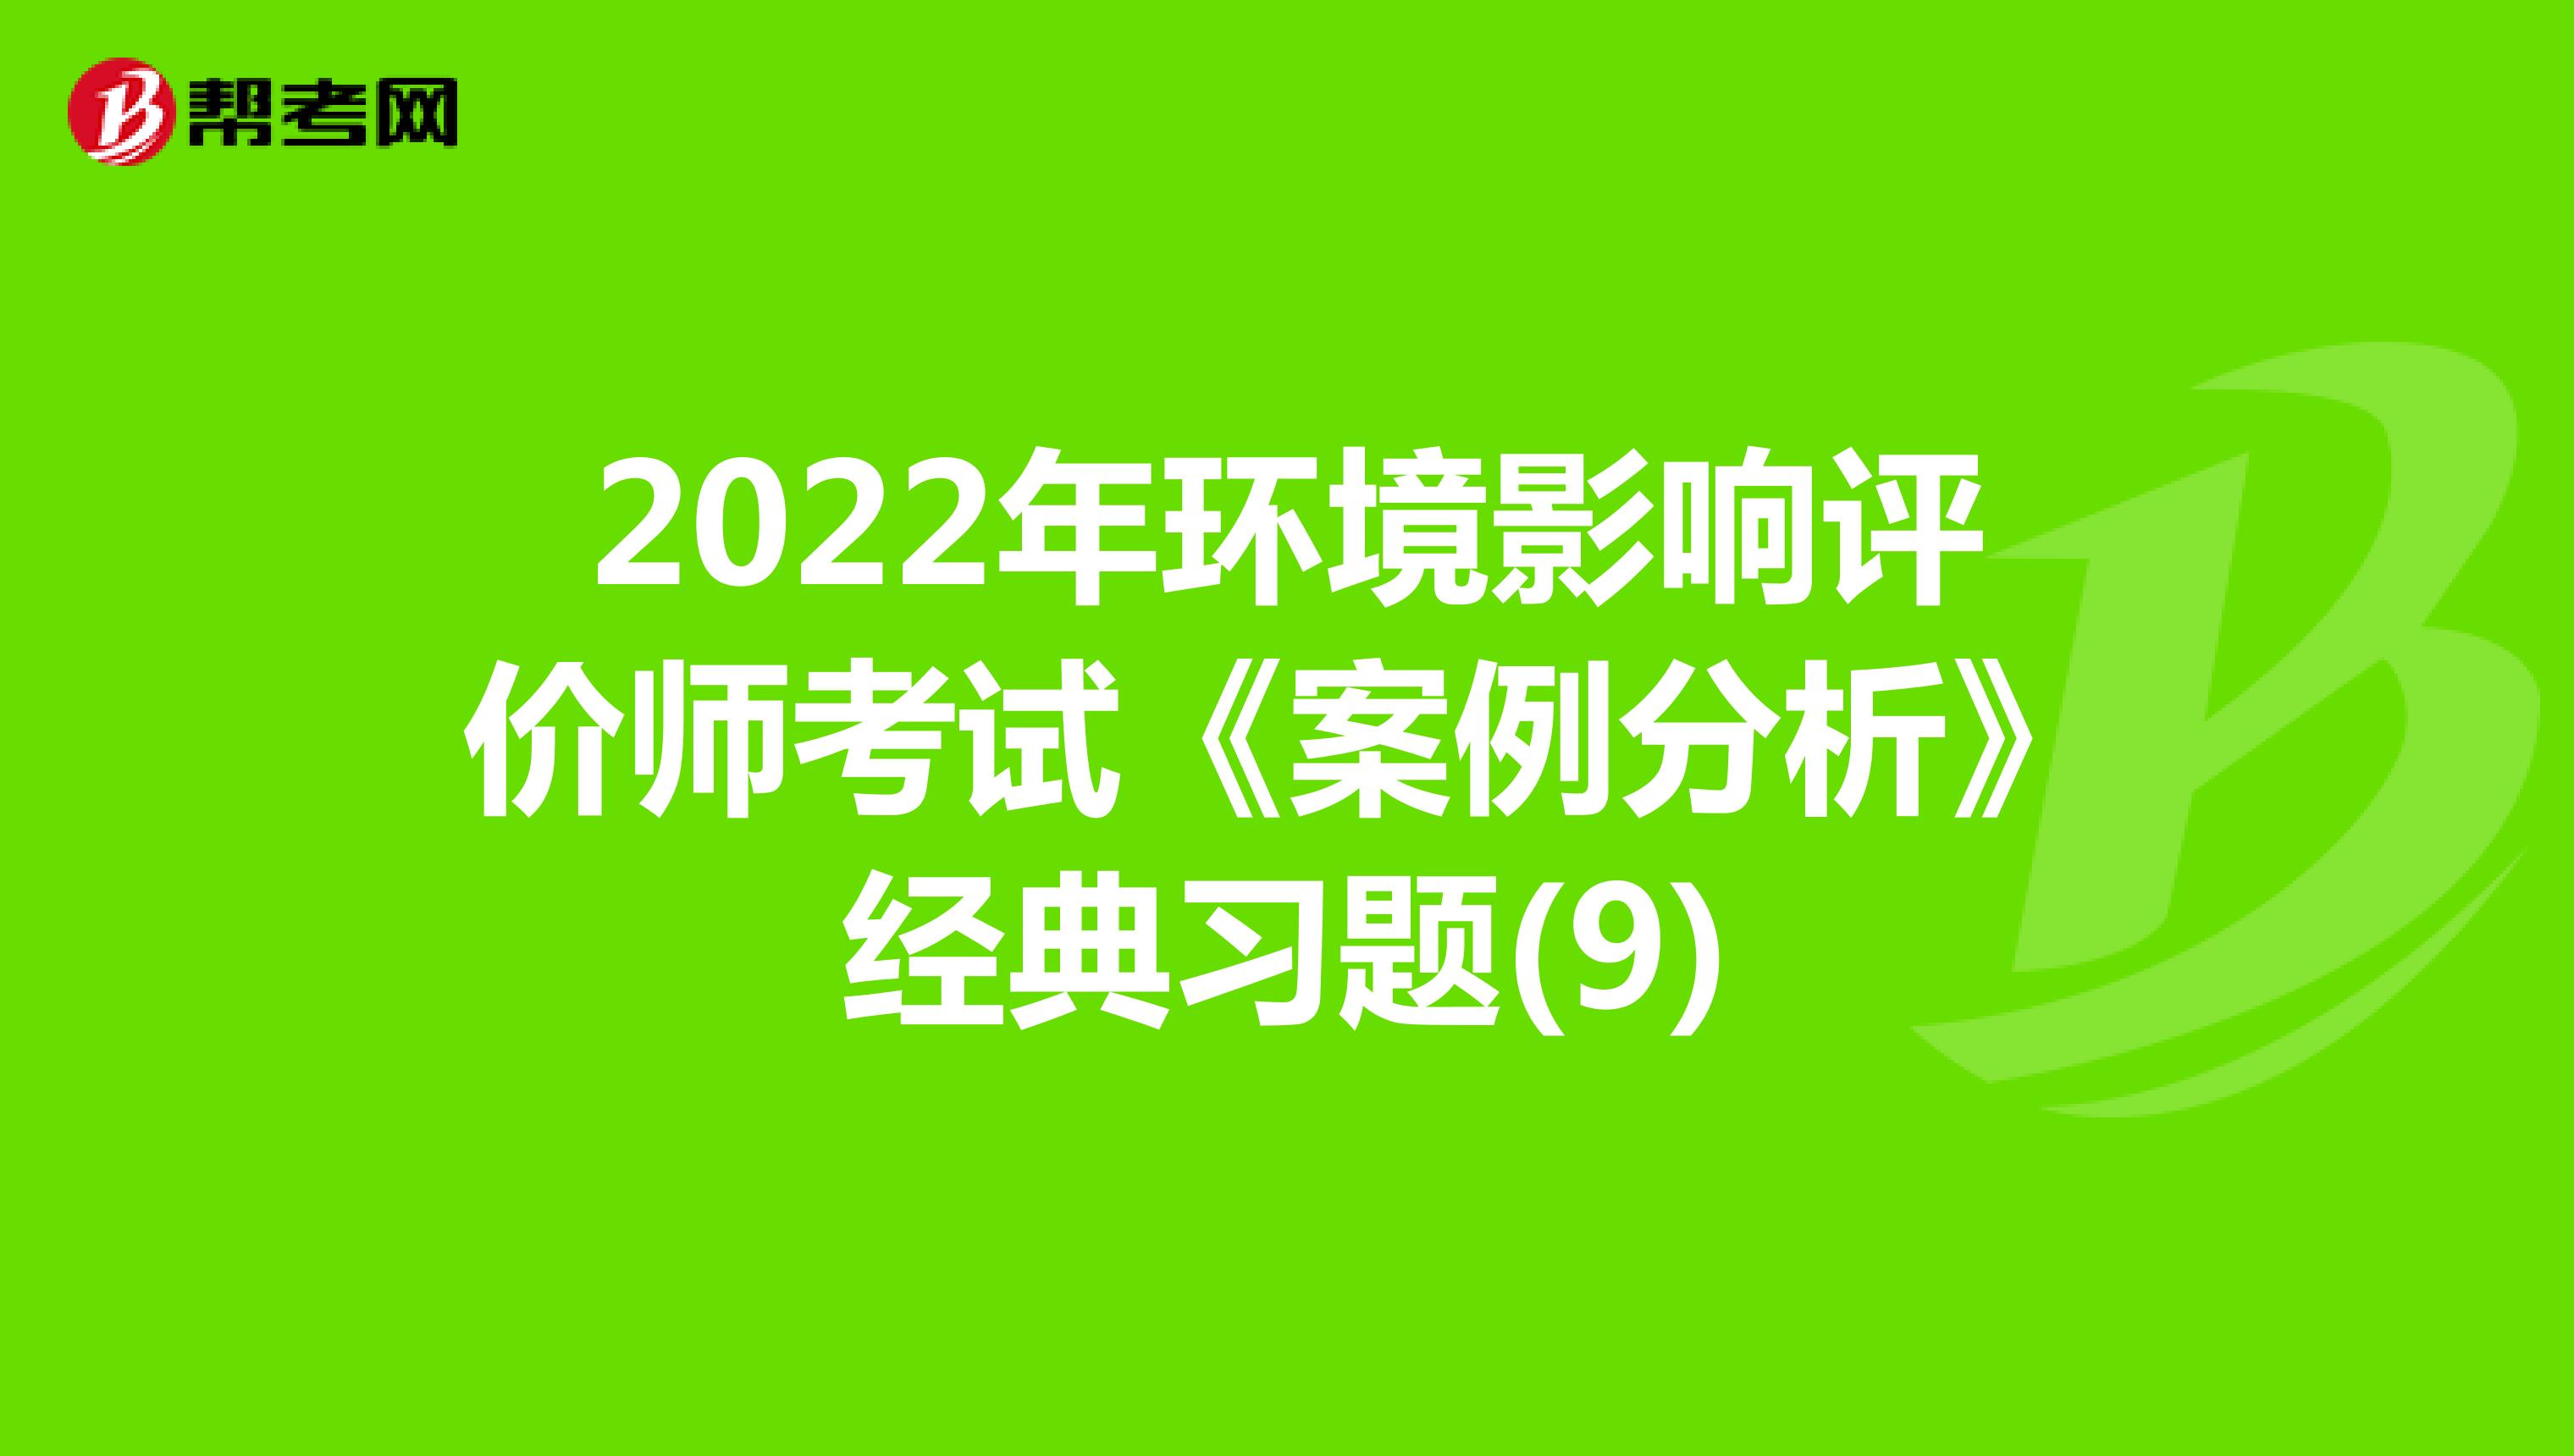 2022年环境影响评价师考试《案例分析》经典习题(9)